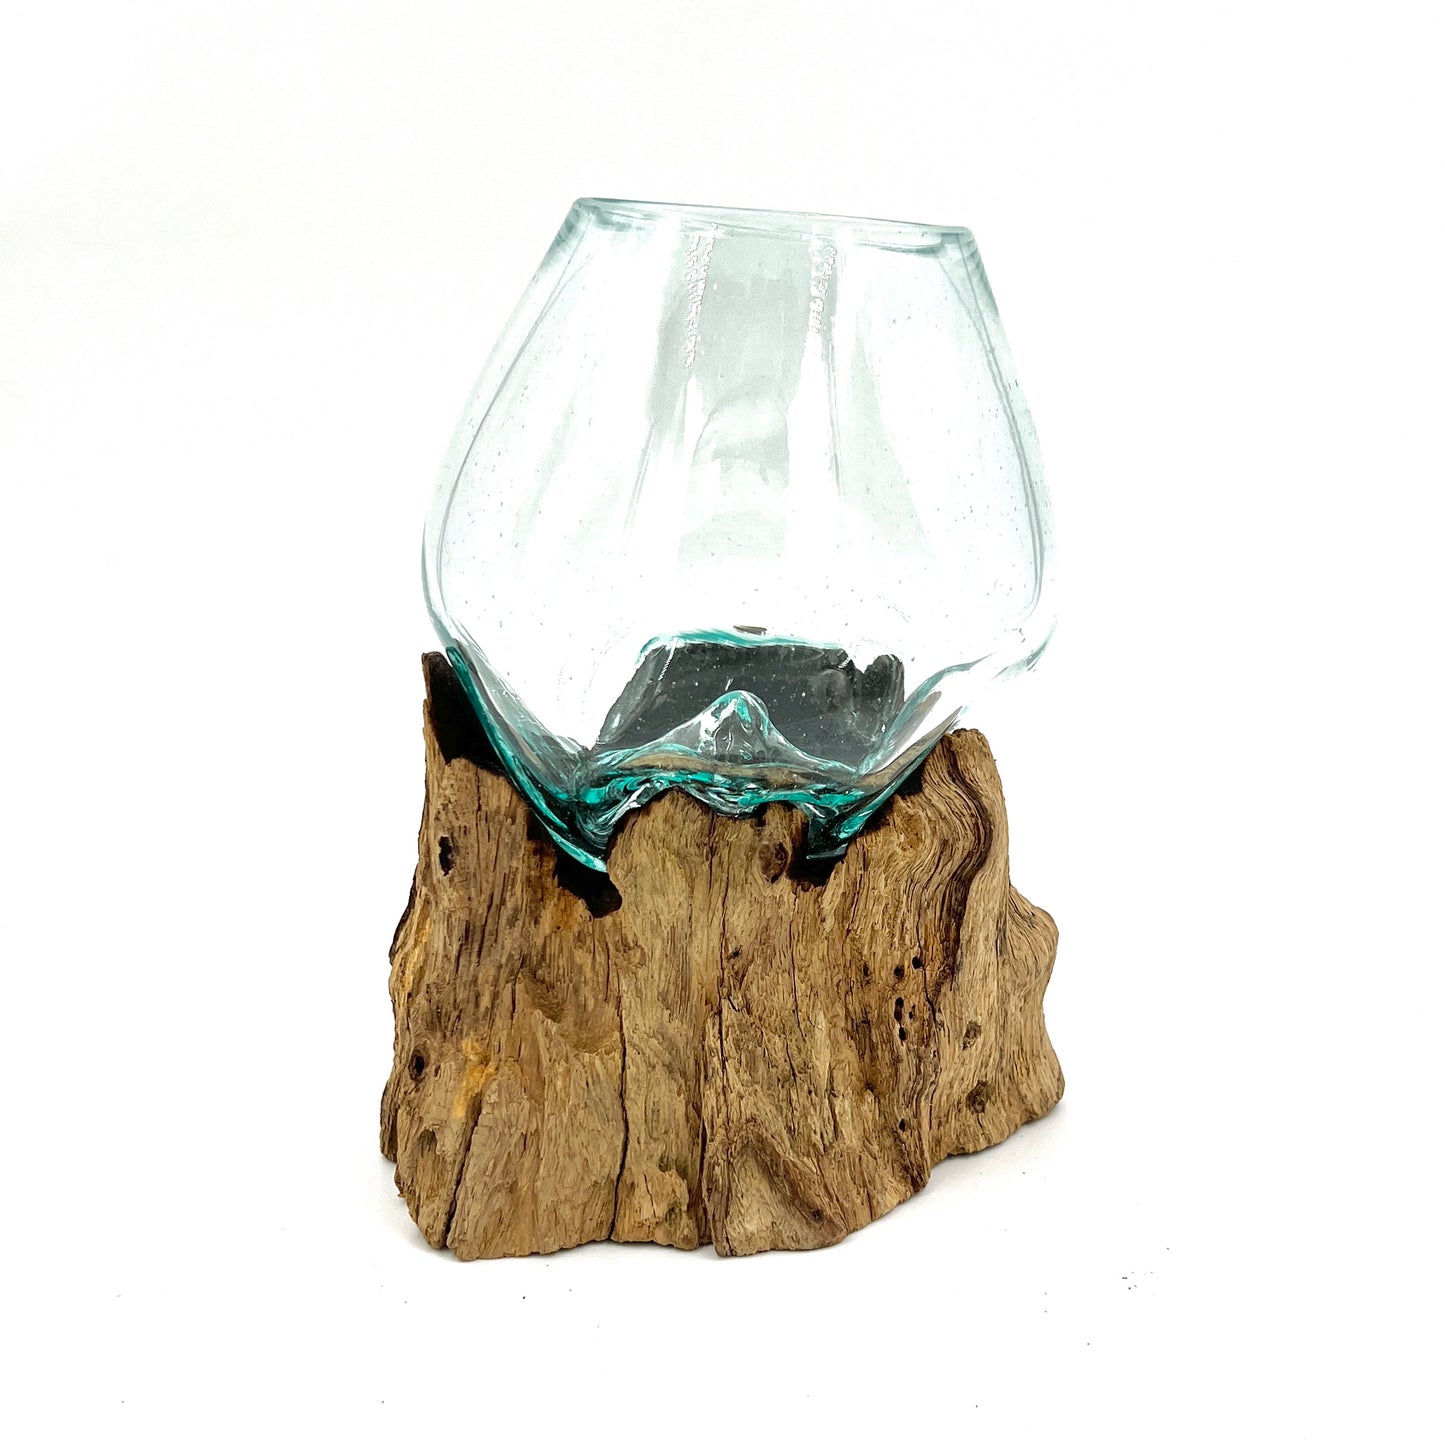 Glass and Driftwood Terrarium